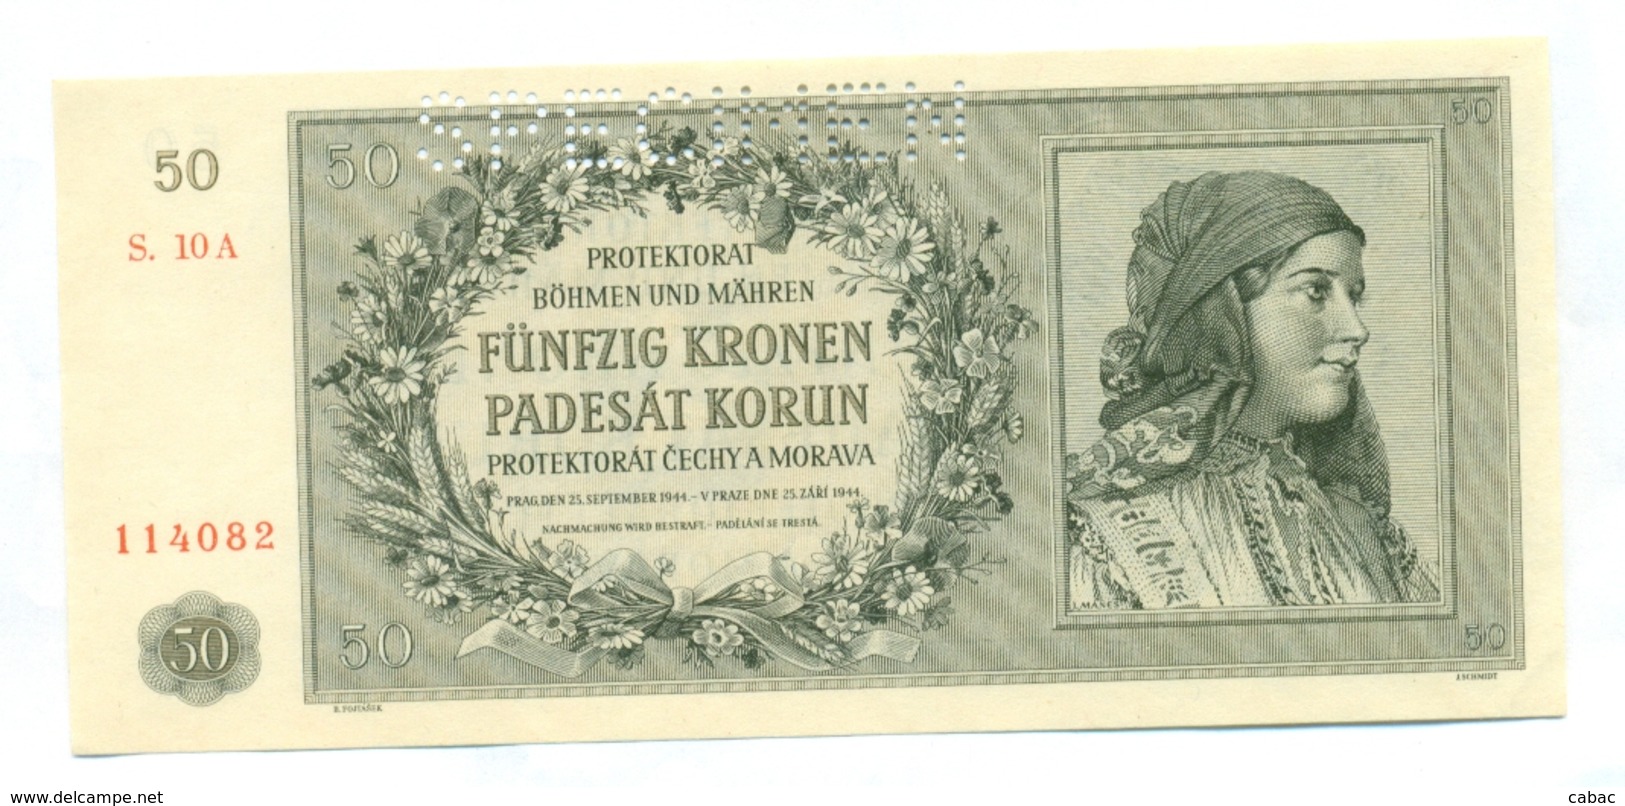 Čechya Morava, Padesat Korun, 50 Korun, Funfzig Kronen, PROTEKTORAT, 1944, SPECIMEN, S. 10A, Bohemia Moravia - Tchécoslovaquie